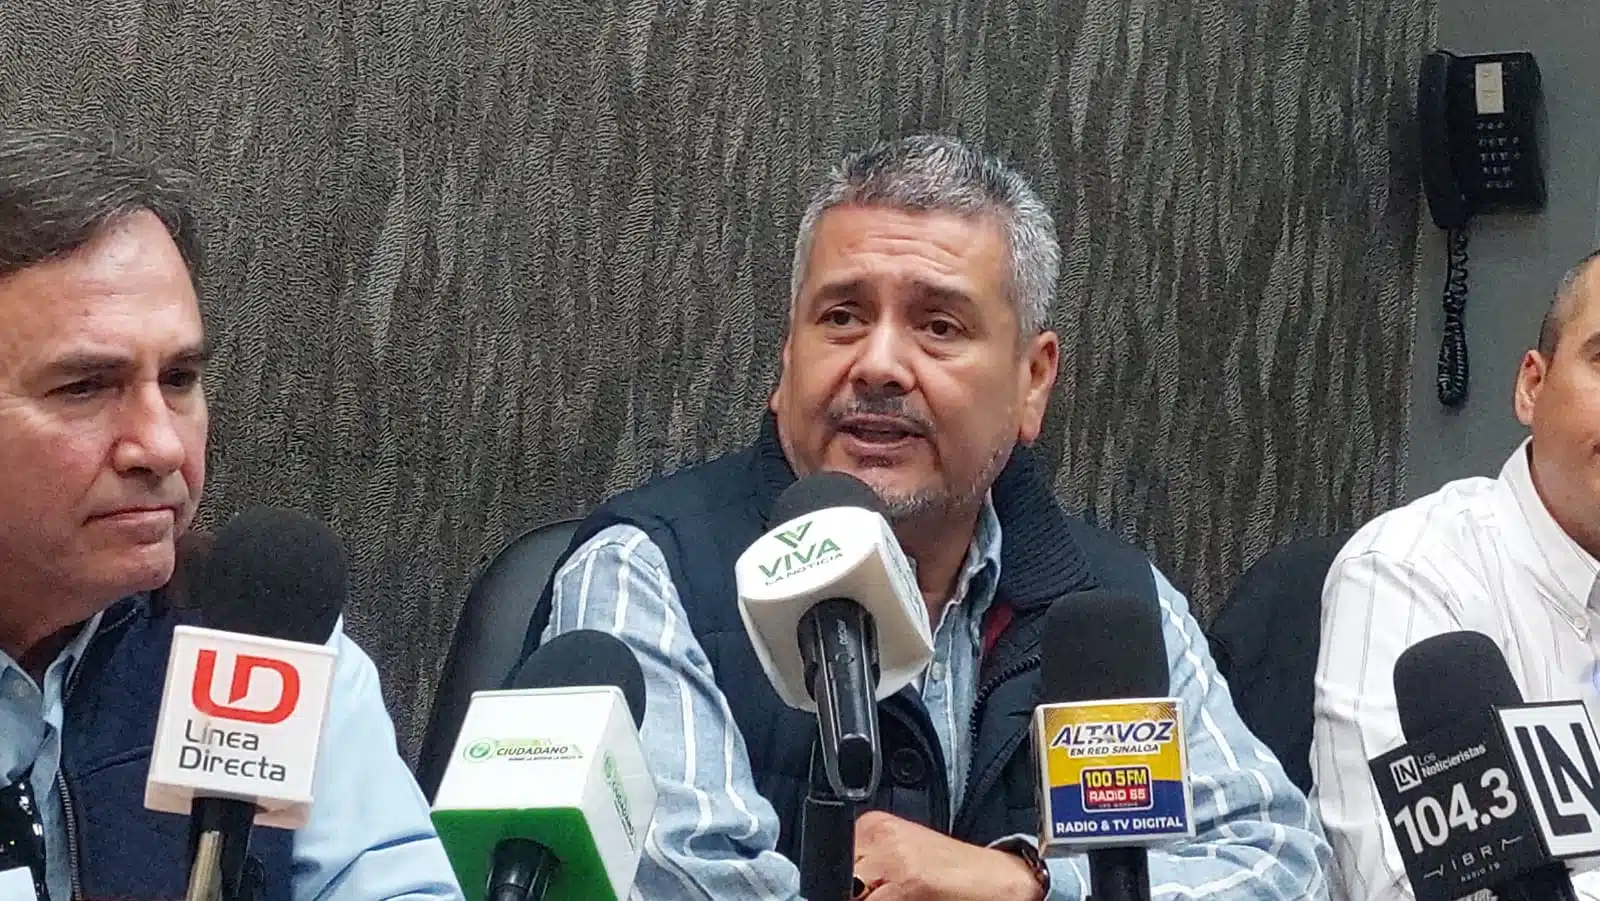 José Ramos Ortiz